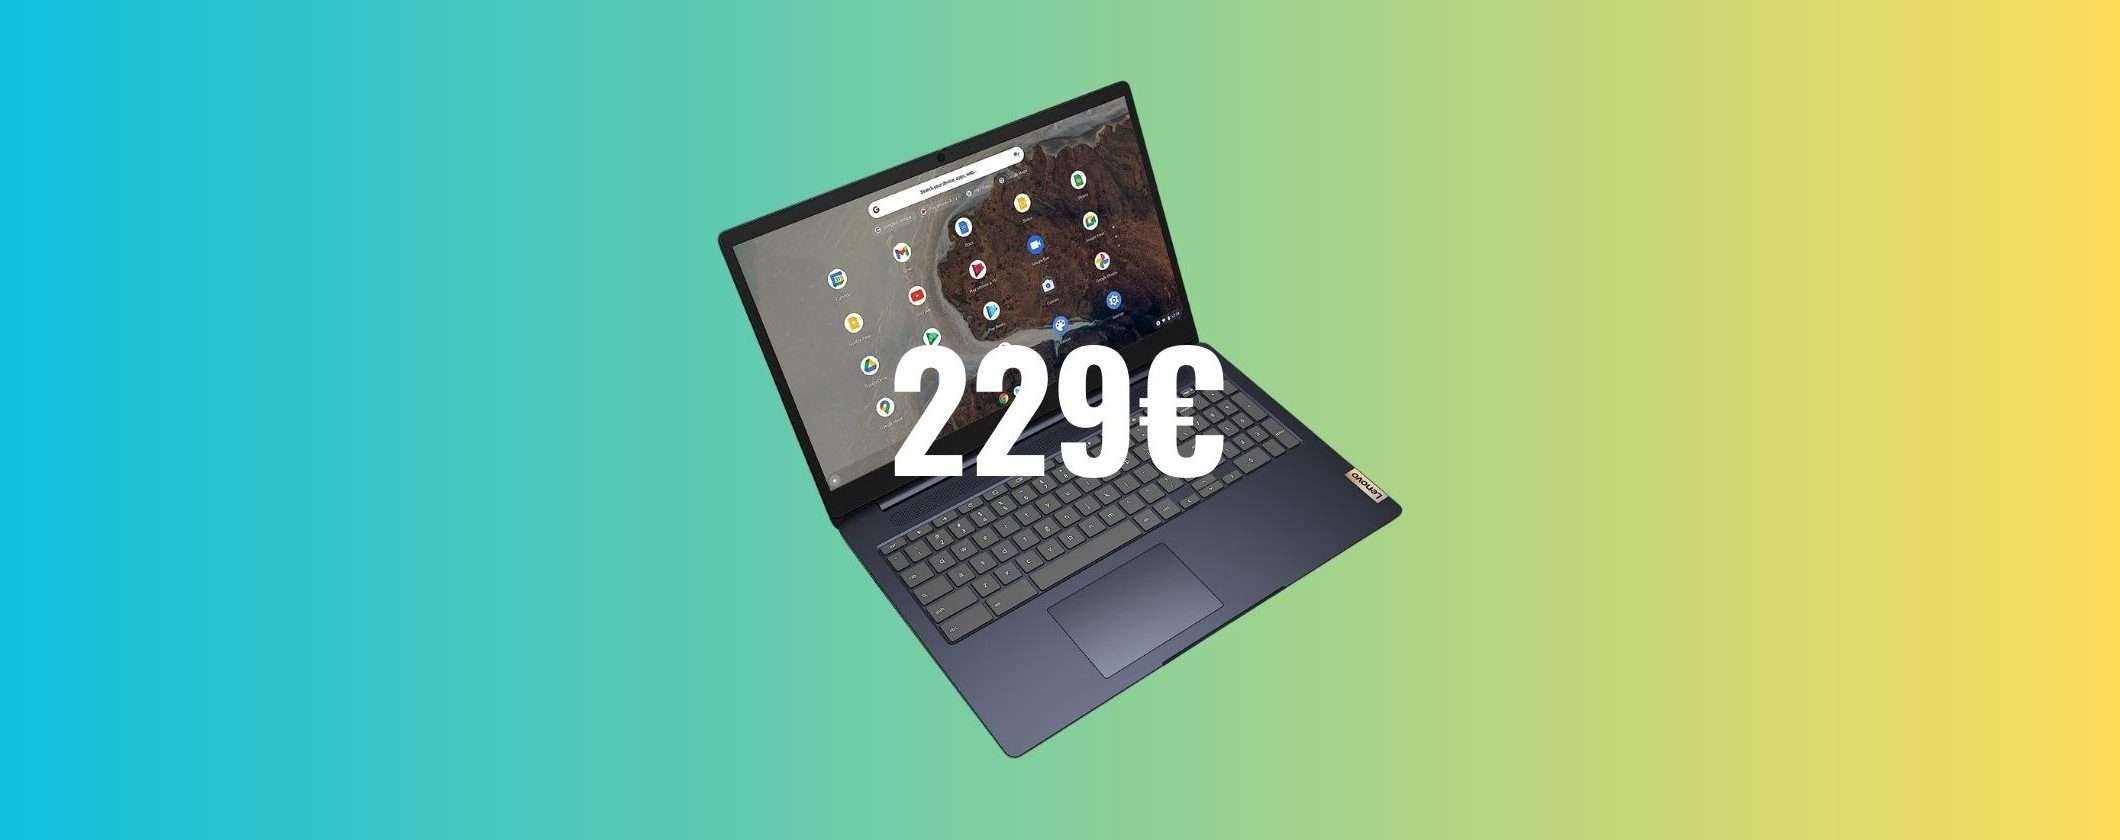 Lenovo IdeaPad 3 Chromebook: solo 229€ per questo gioiellino